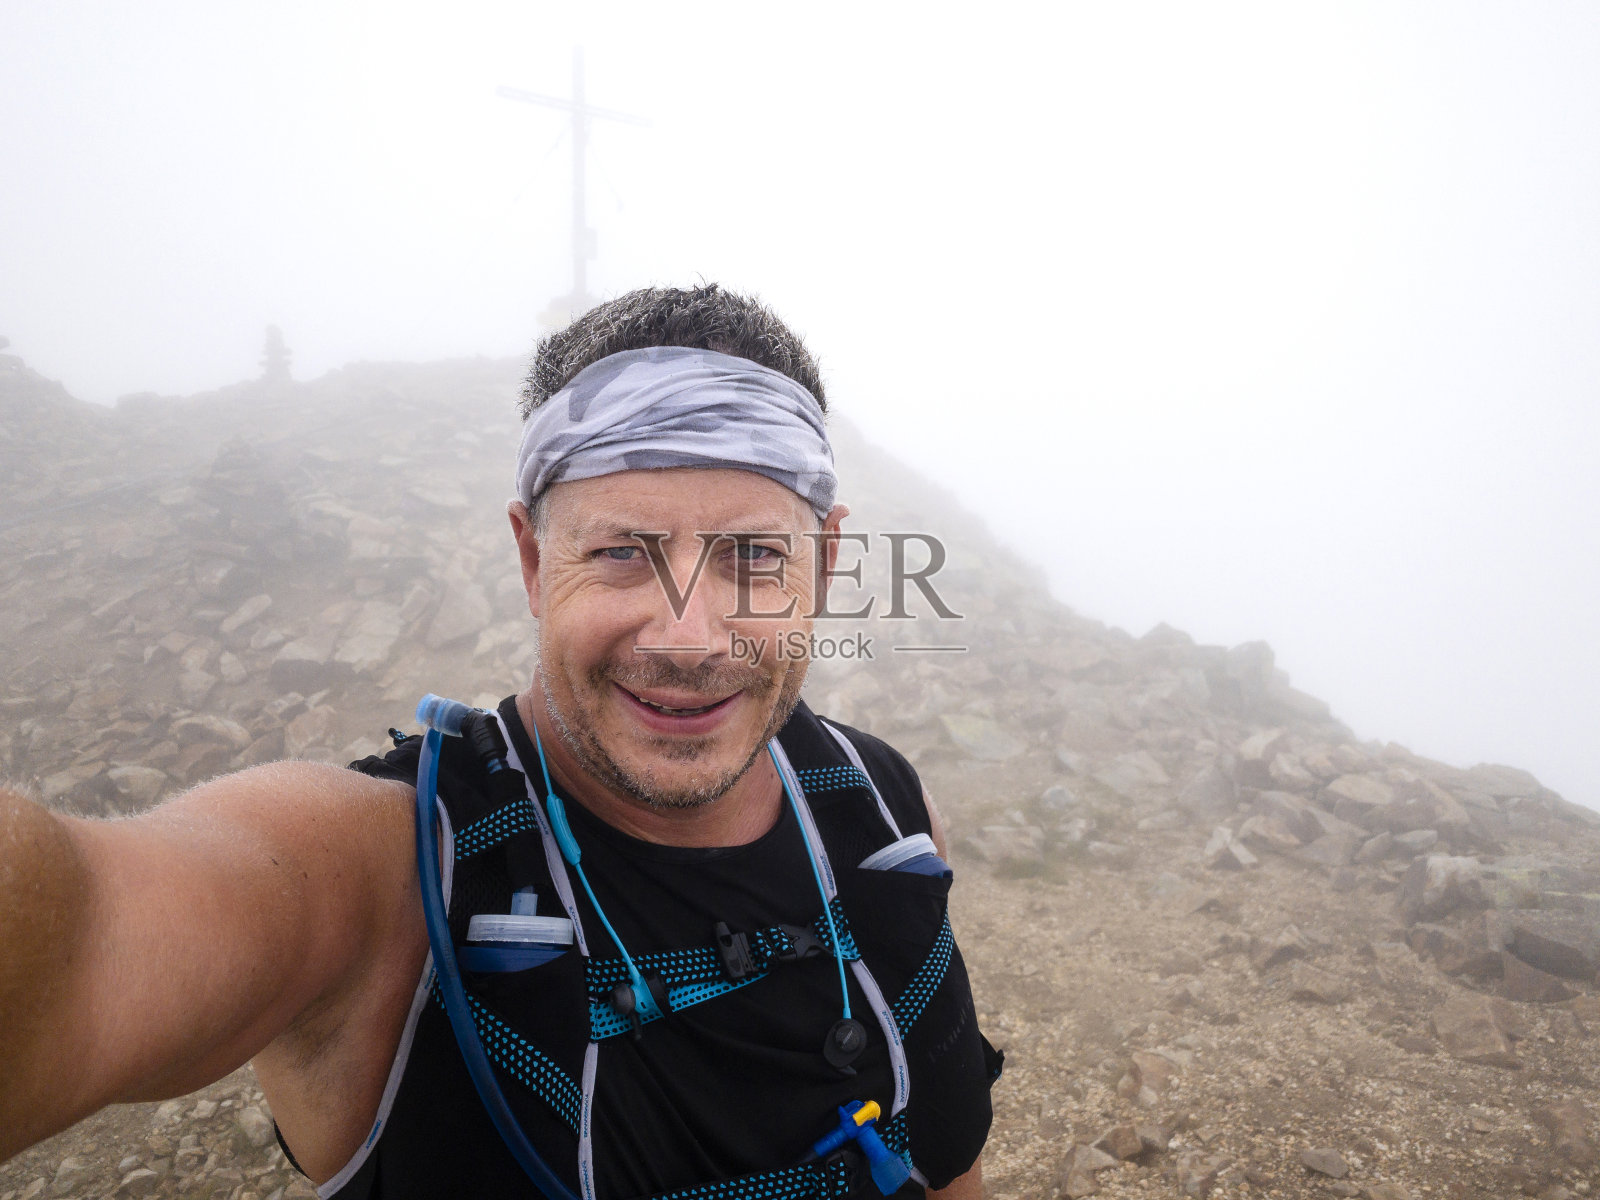 一名运动员在卡林提斯山脉跑步时的自拍照片摄影图片